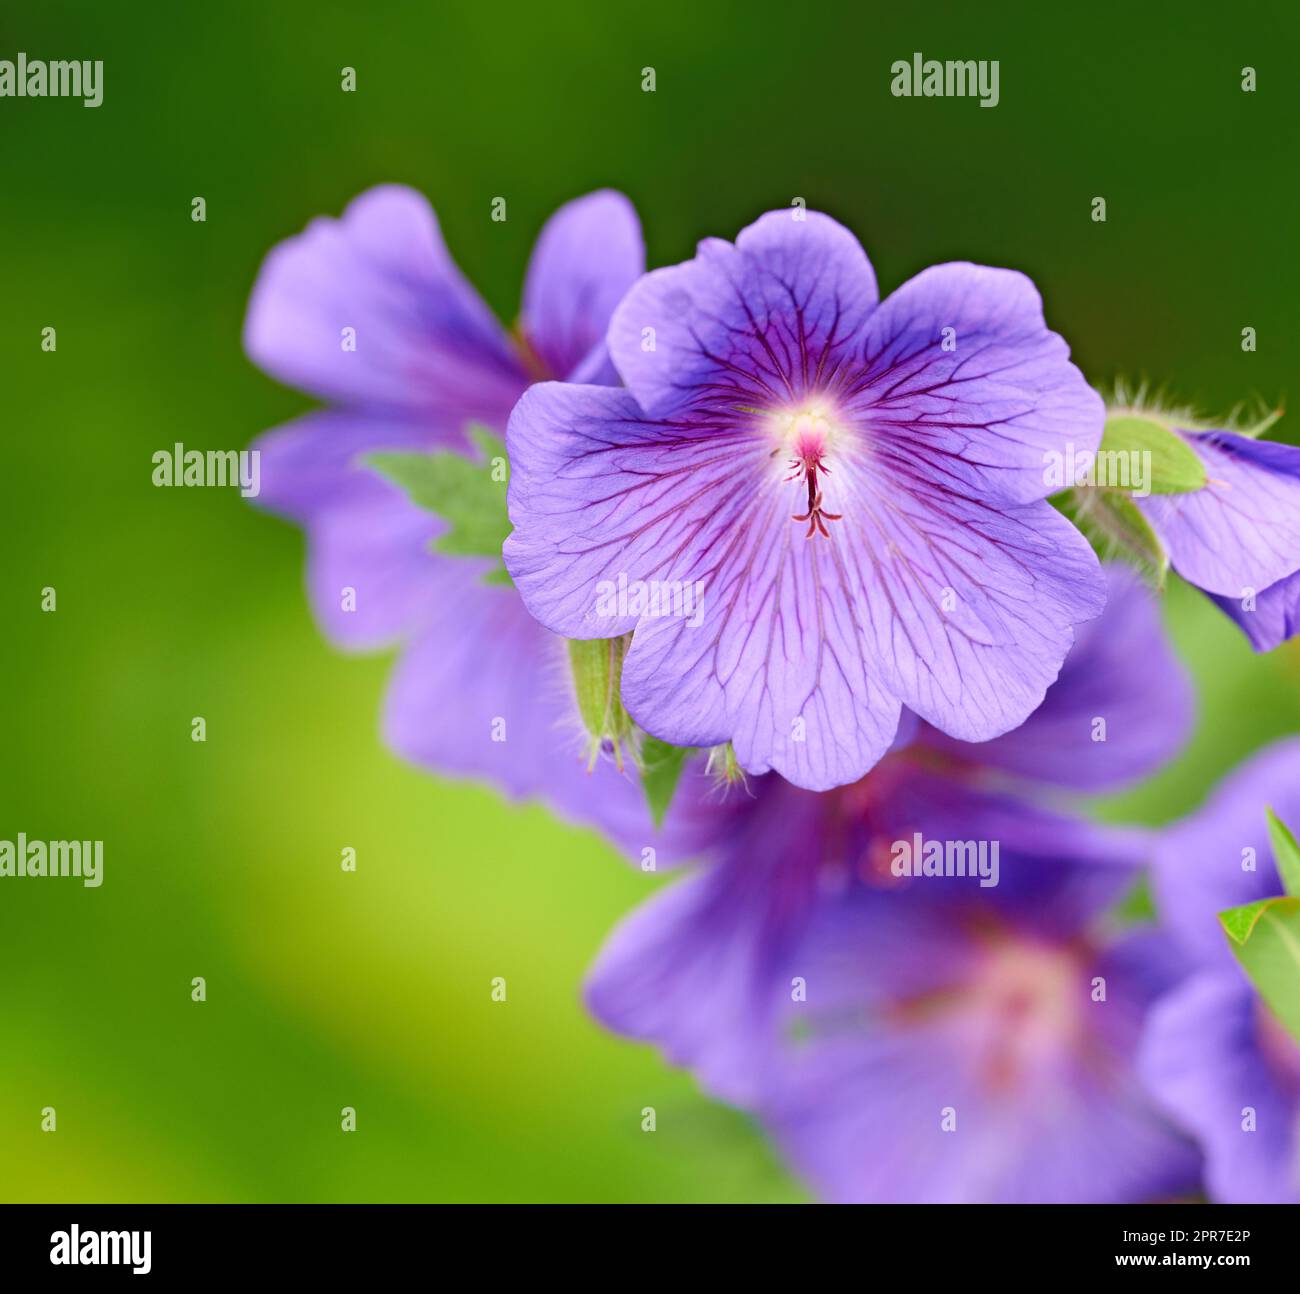 Großaufnahme der lila Cranesbill-Blumen auf grünem Hintergrund. Blütendetails einer mehrjährigen Geranium-Blütenpflanze, die in einem Garten wächst. Hübsche farbenfrohe Gartenblüten für die Gartengestaltung im Frühling Stockfoto